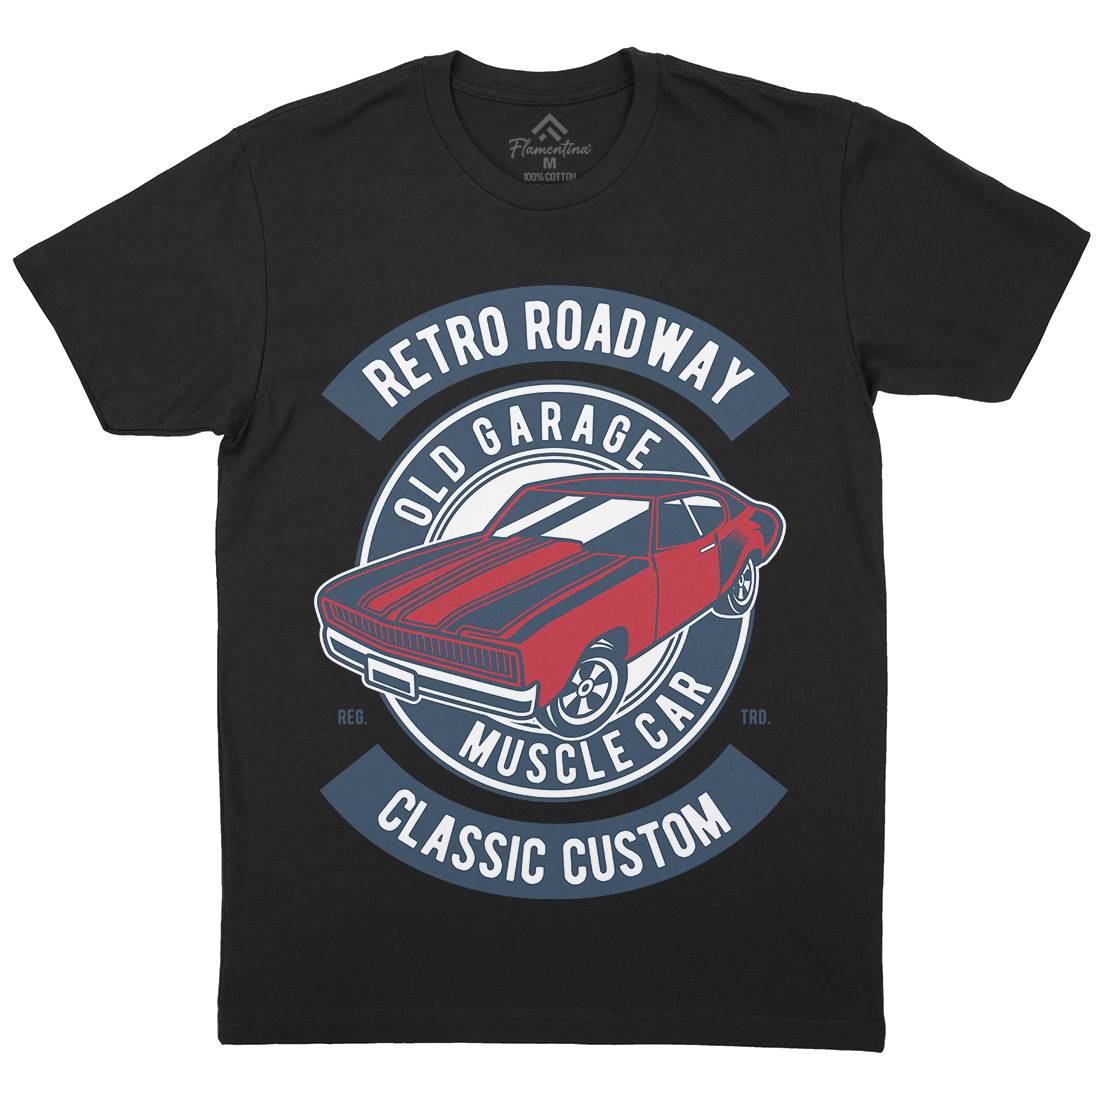 Retro Roadway Mens Crew Neck T-Shirt Cars D568